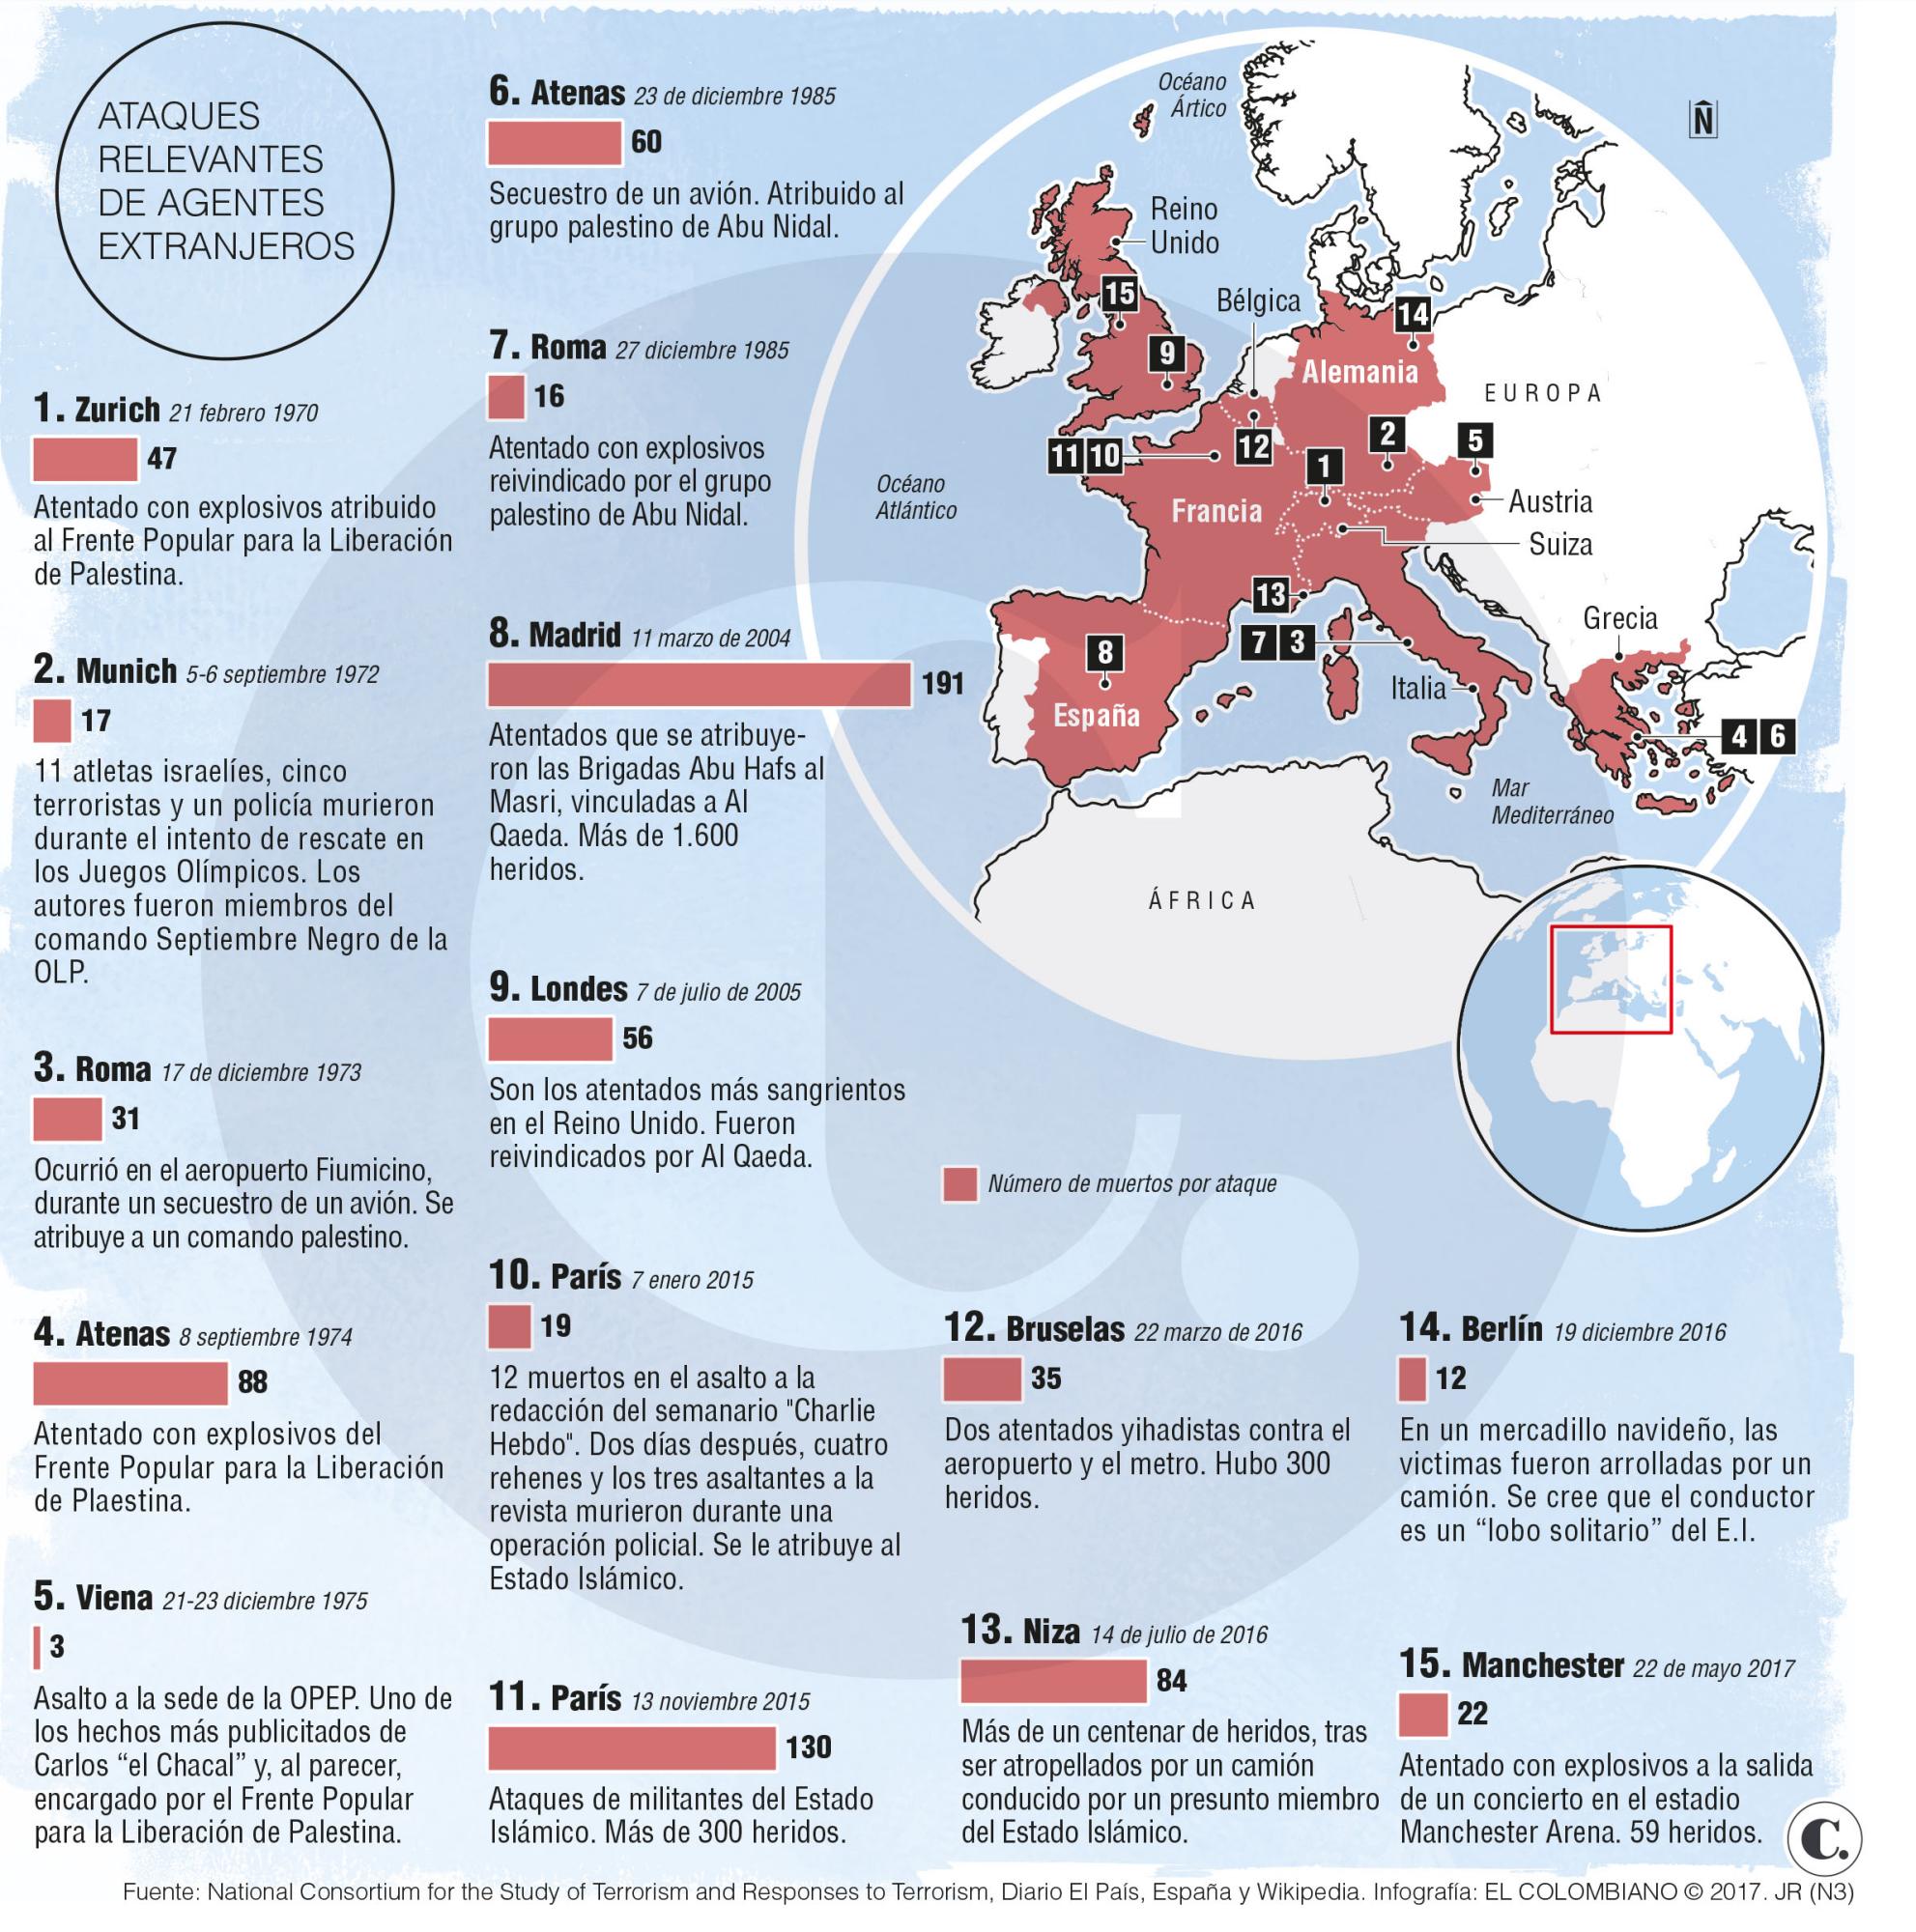 Terrorismo en Europa resuena más fuerte que en otros lugares